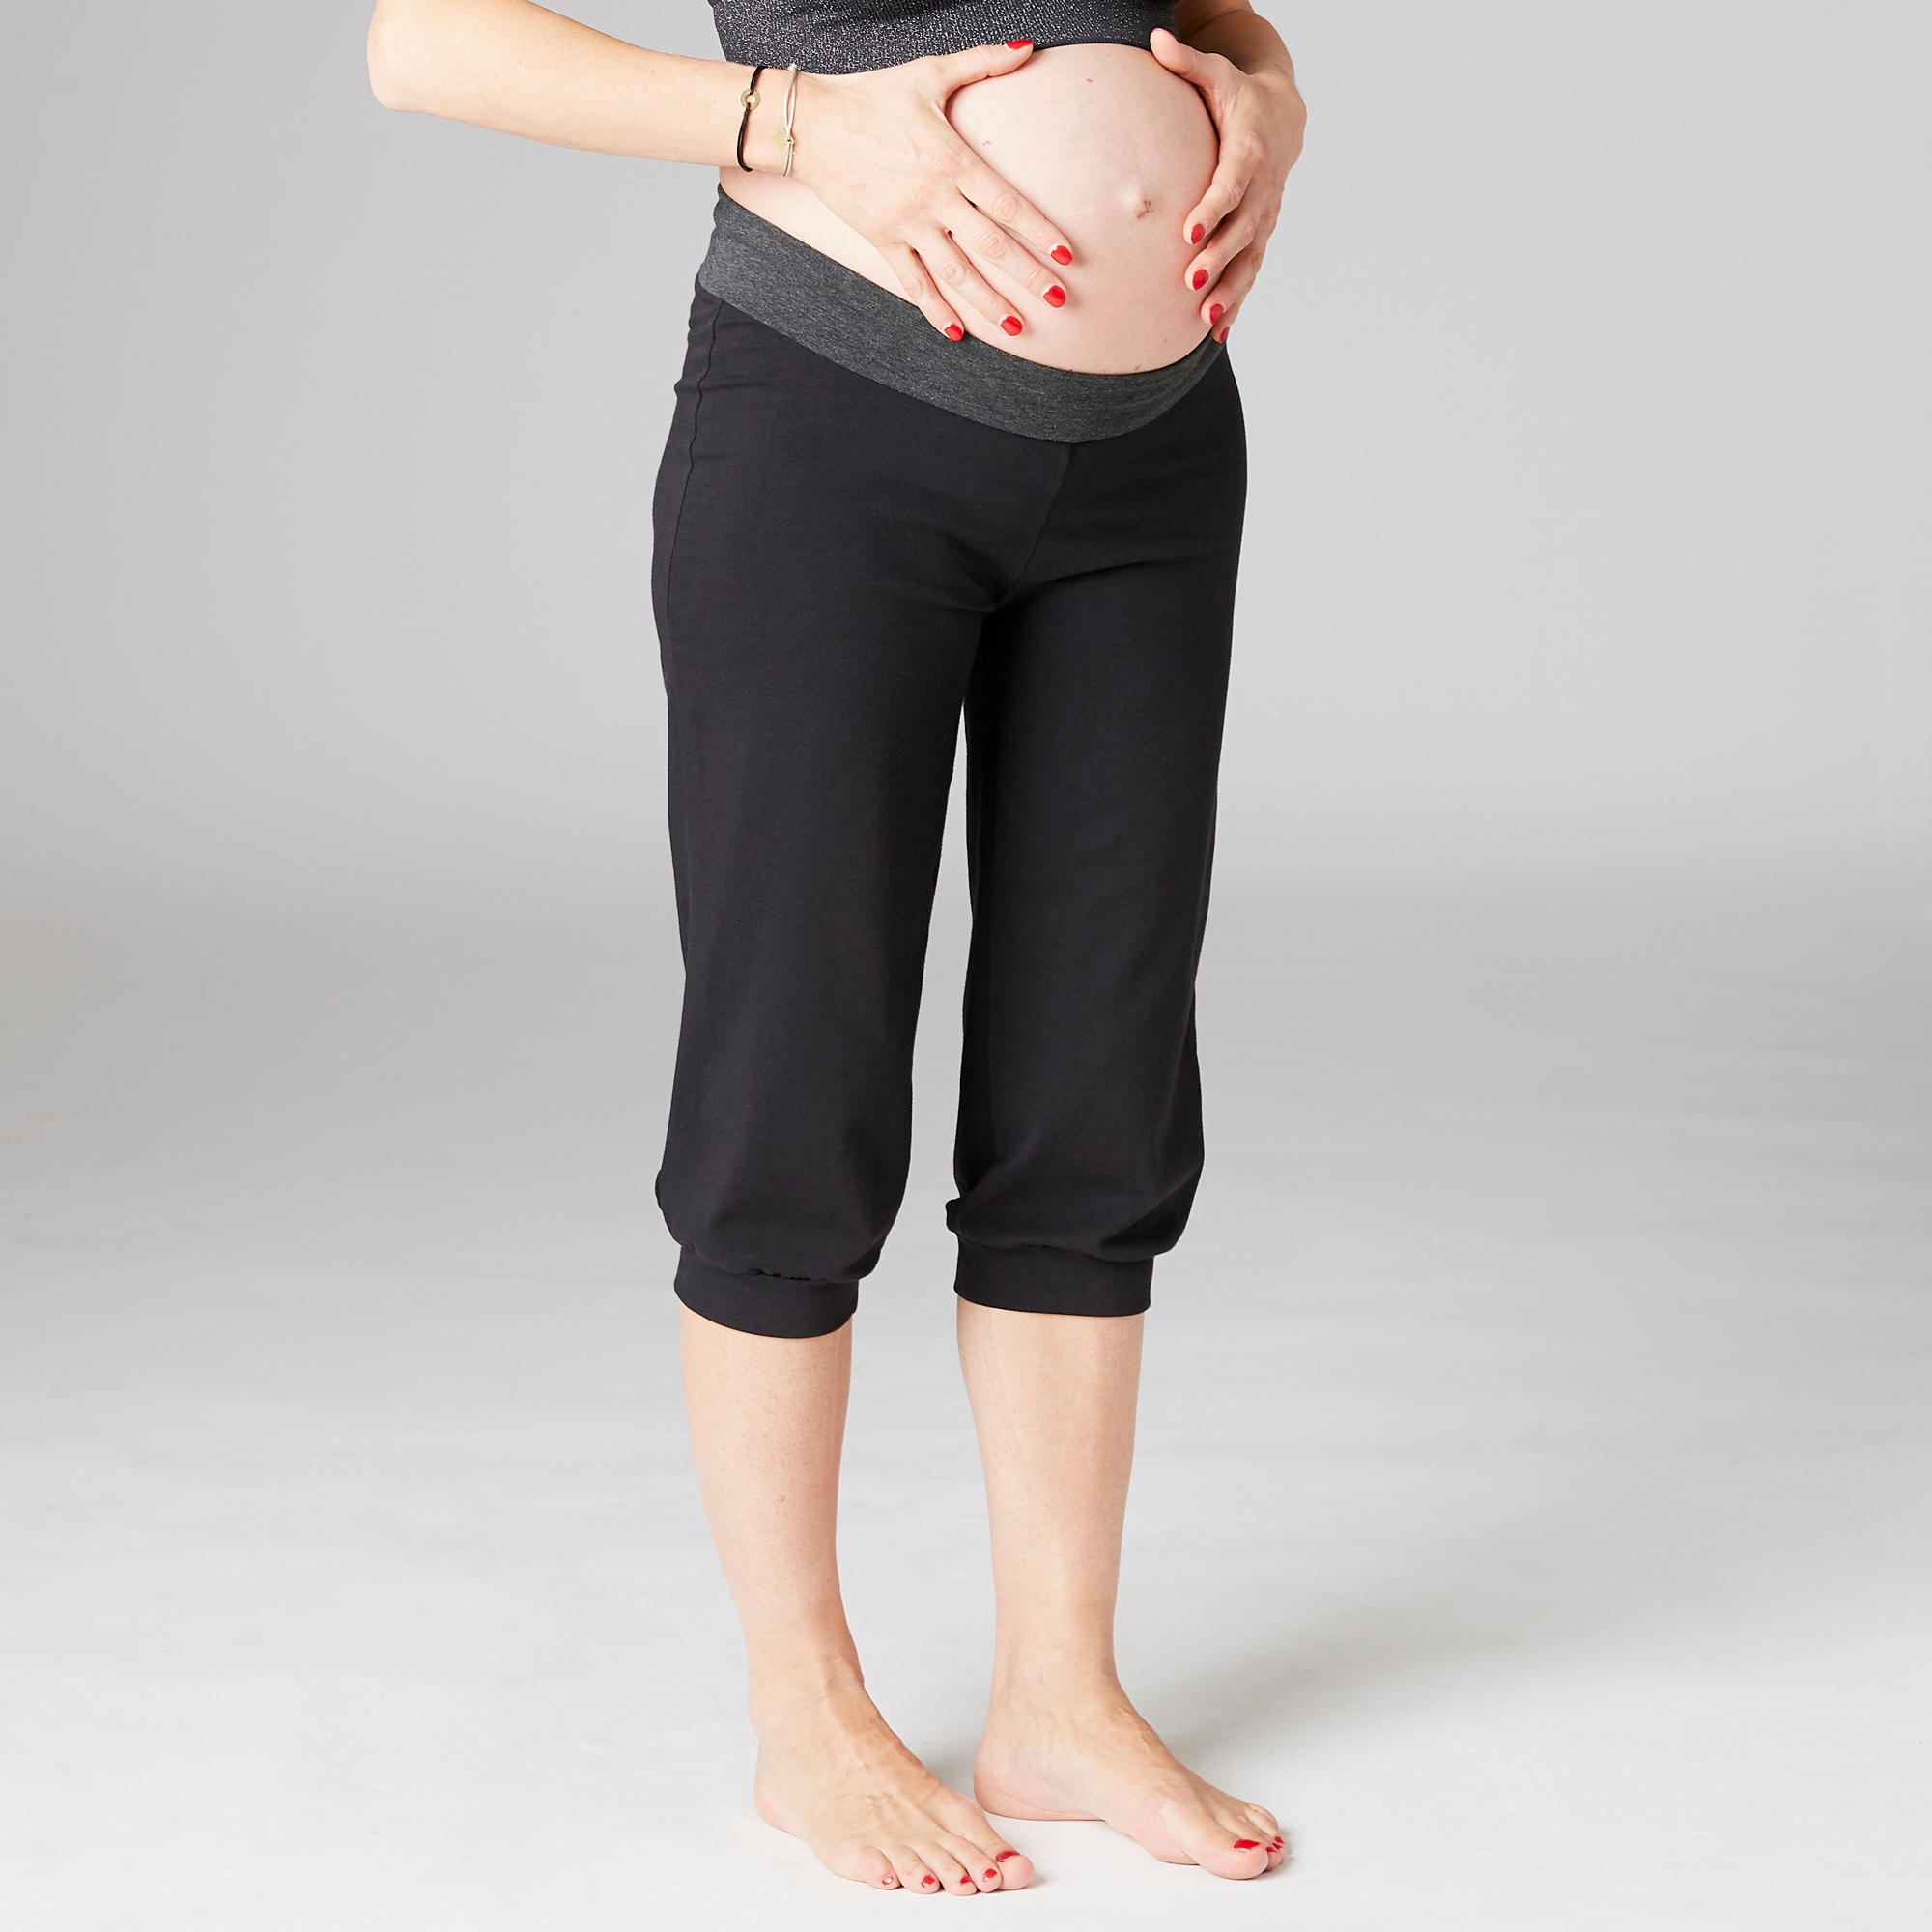 Women's Cotton Yoga Cropped Bottoms - Black/Grey 8/10